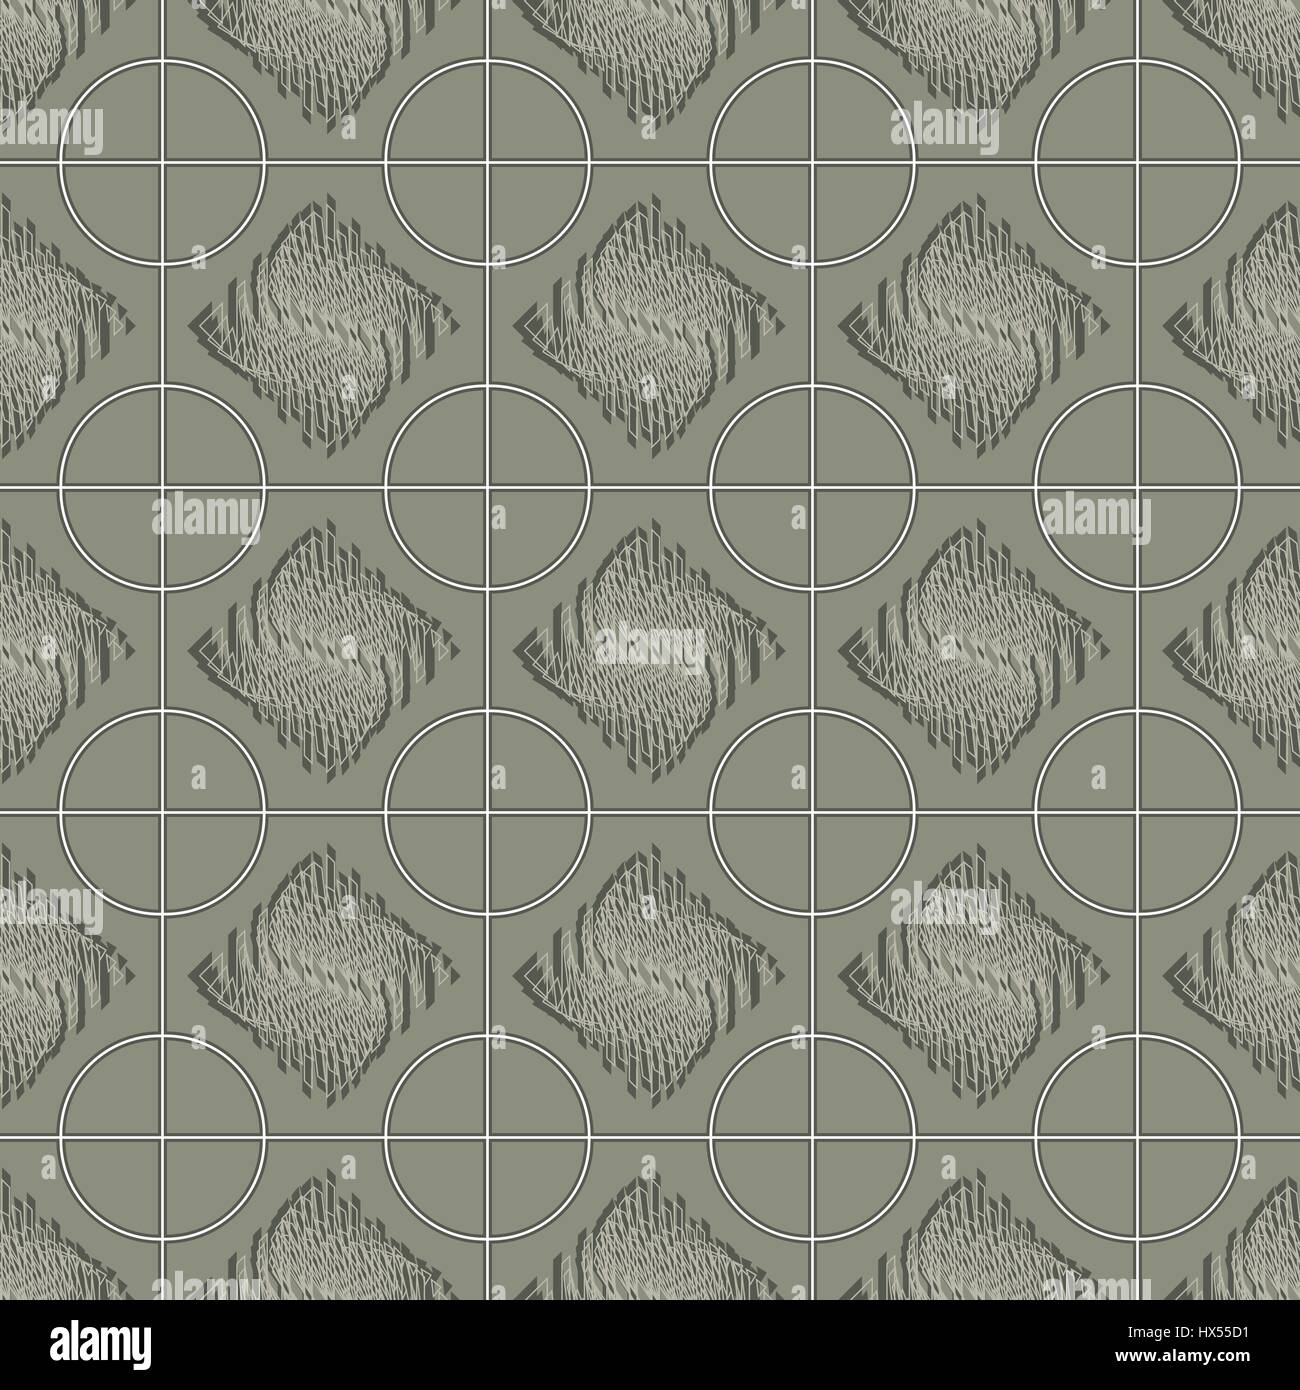 Vektor-Muster Geometrien, deformierte Platz, Muster für Textilien, weiche graue Farbe Stock Vektor